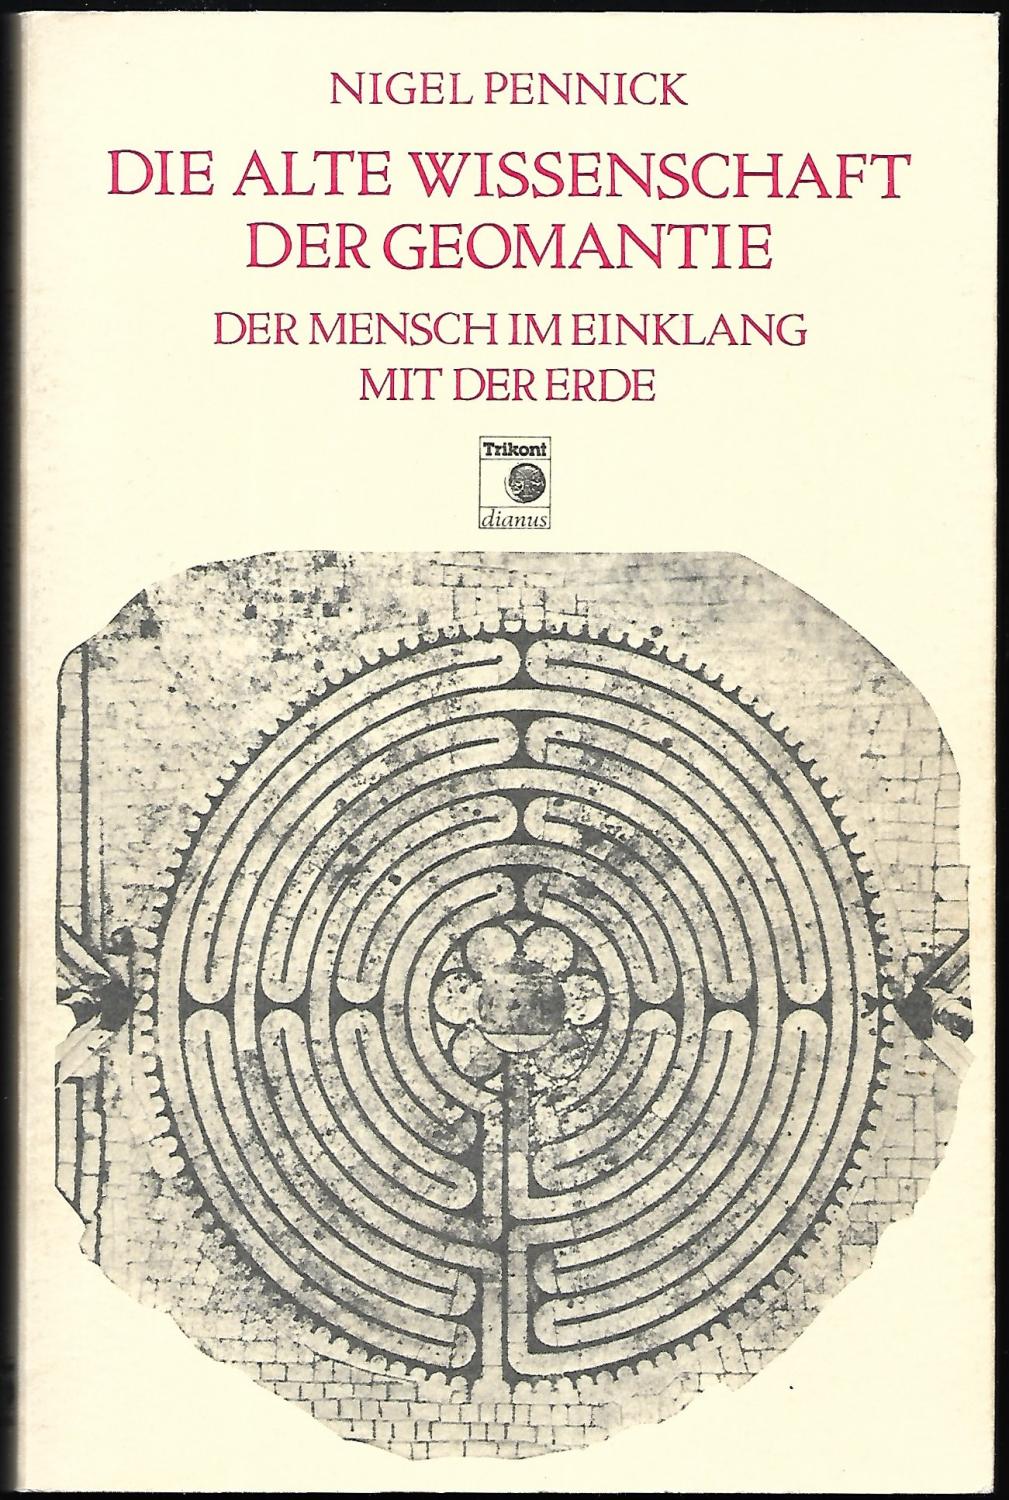 Die alte Wissenschaft der Geomantie. Der Mensch im Einklang mit der Erde. Übersetzung: Andreas Lentz. - PENNICK, Nigel